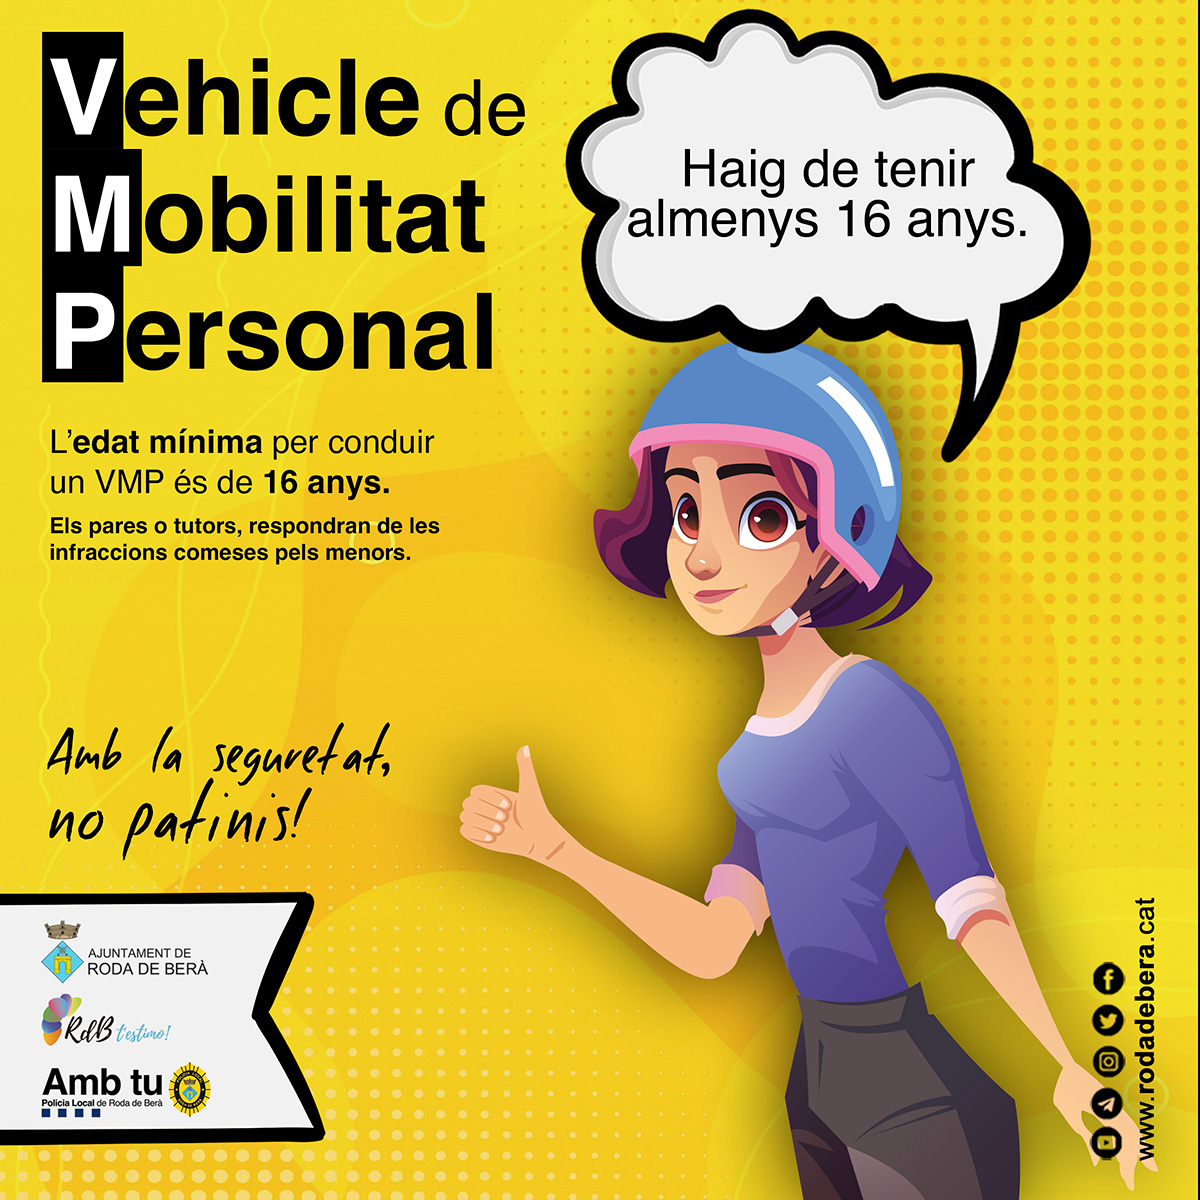 Vehicles de Mobilitat Personal